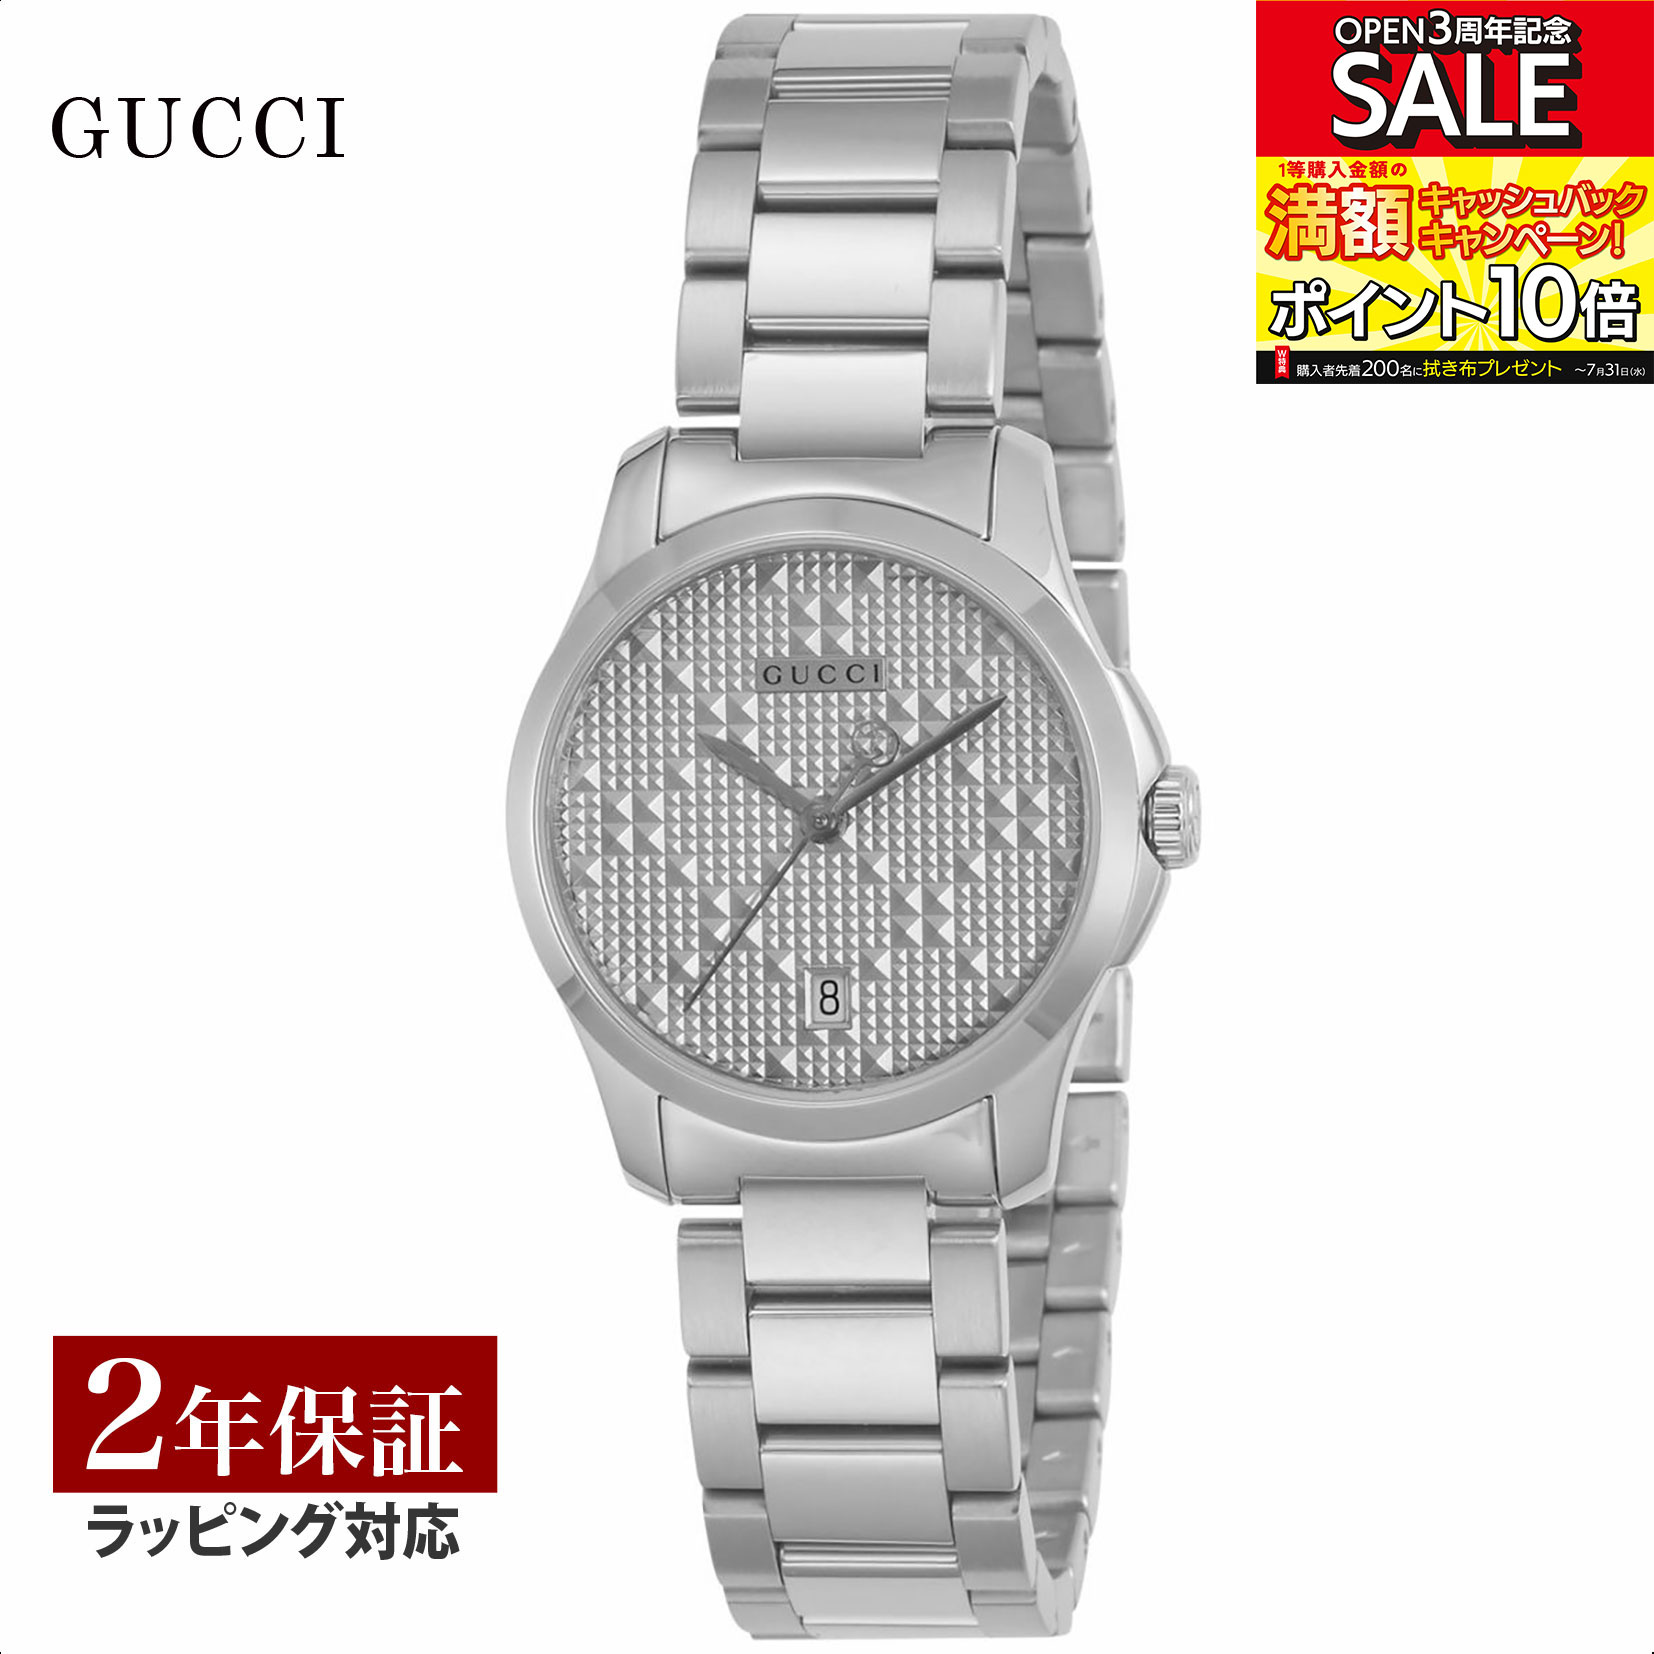 グッチ GUCCI レディース 時計 G-TIMELESS Gタイムレス クォーツ シルバー YA126551 時計 腕時計 高級腕時計 ブランド